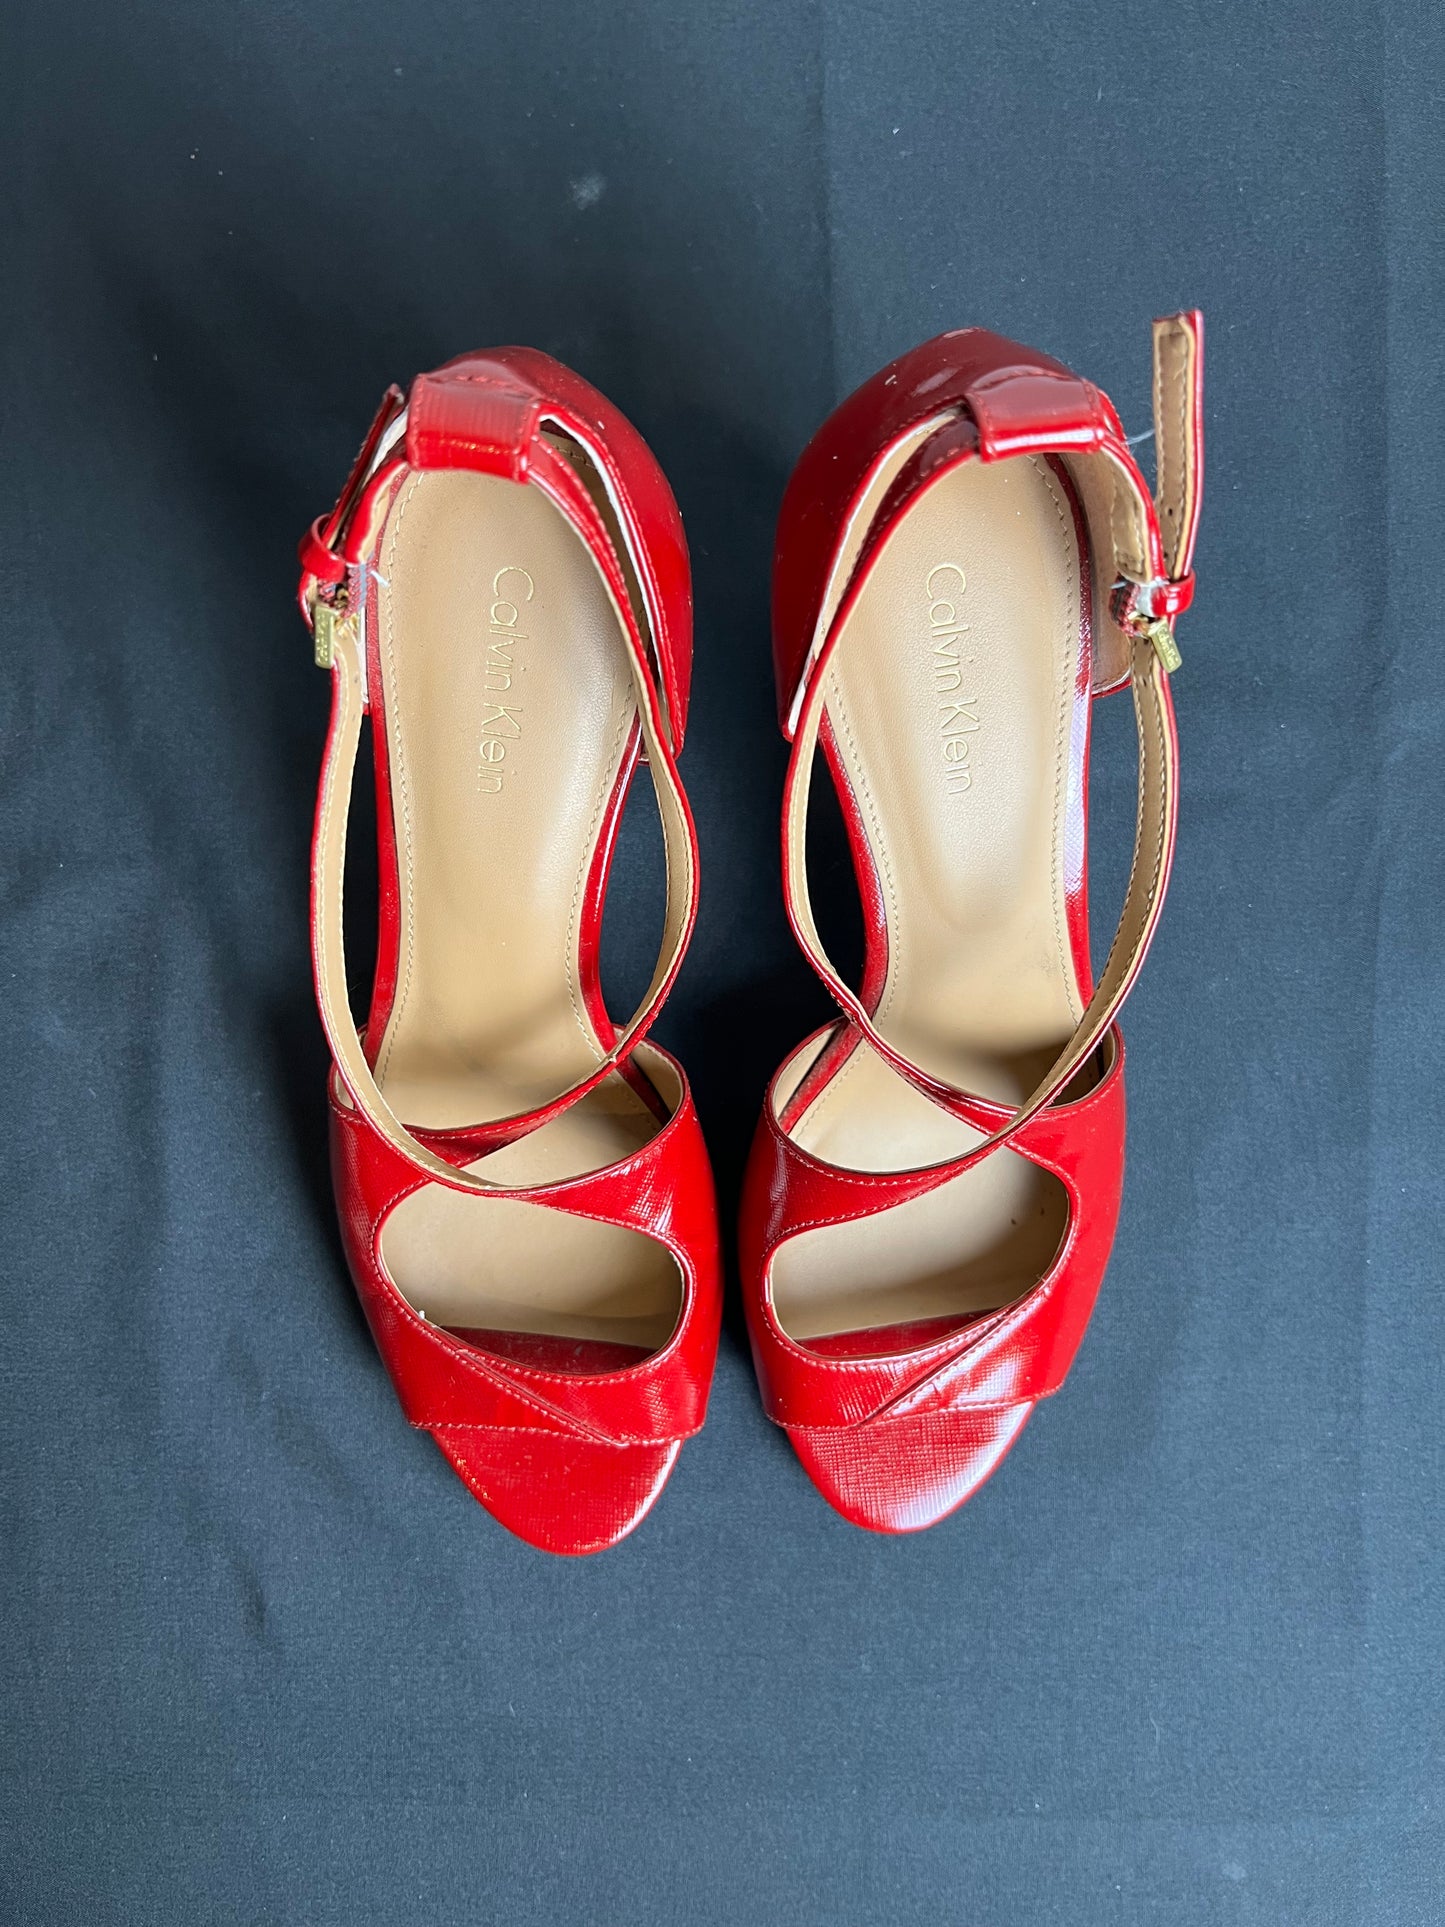 Sandals Heels Stiletto By Calvin Klein  Size: 7